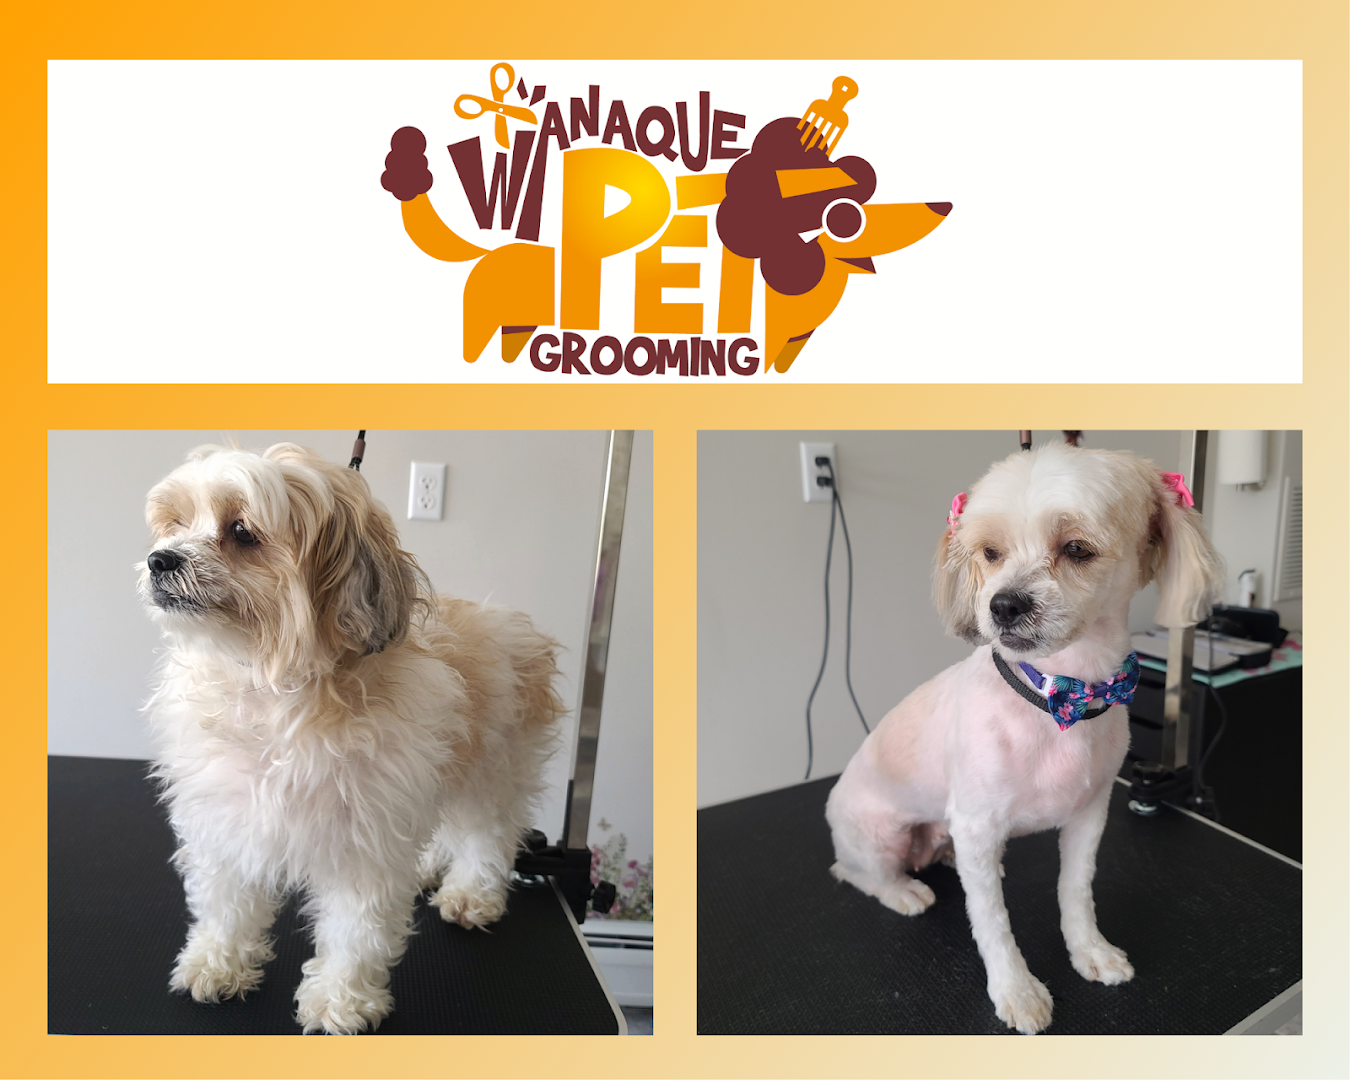 Wanaque Pet Grooming LLC